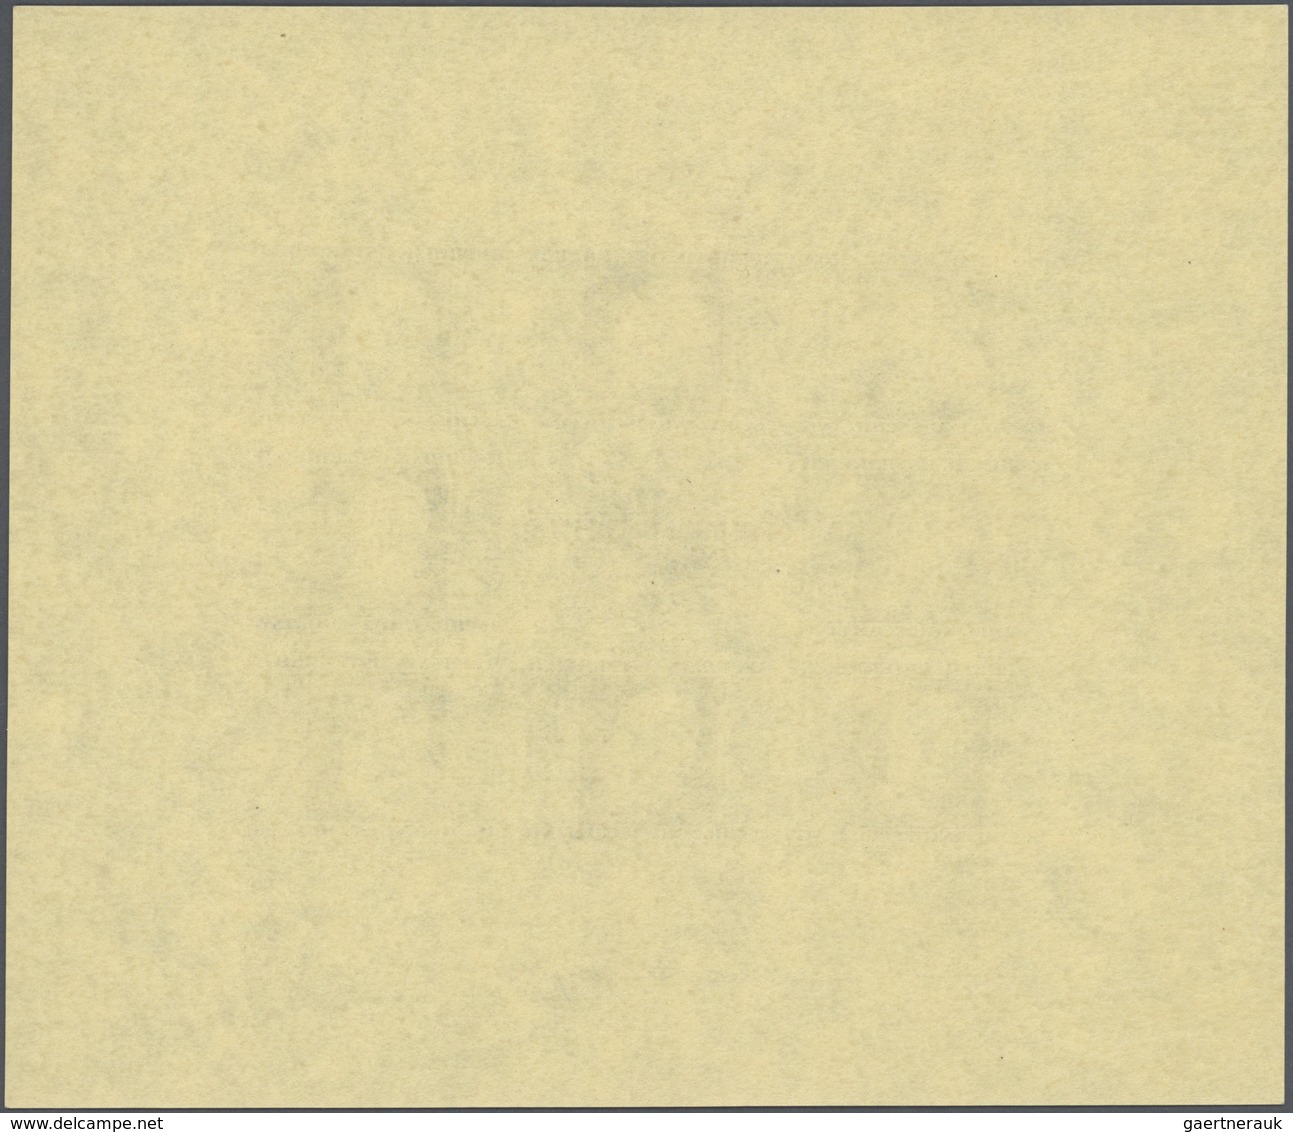 15431D Österreich: 1946, Renner, ungezähnt auf gelbem Japanpapier, kompletter Kleinbogensatz, Klb. 775B mit